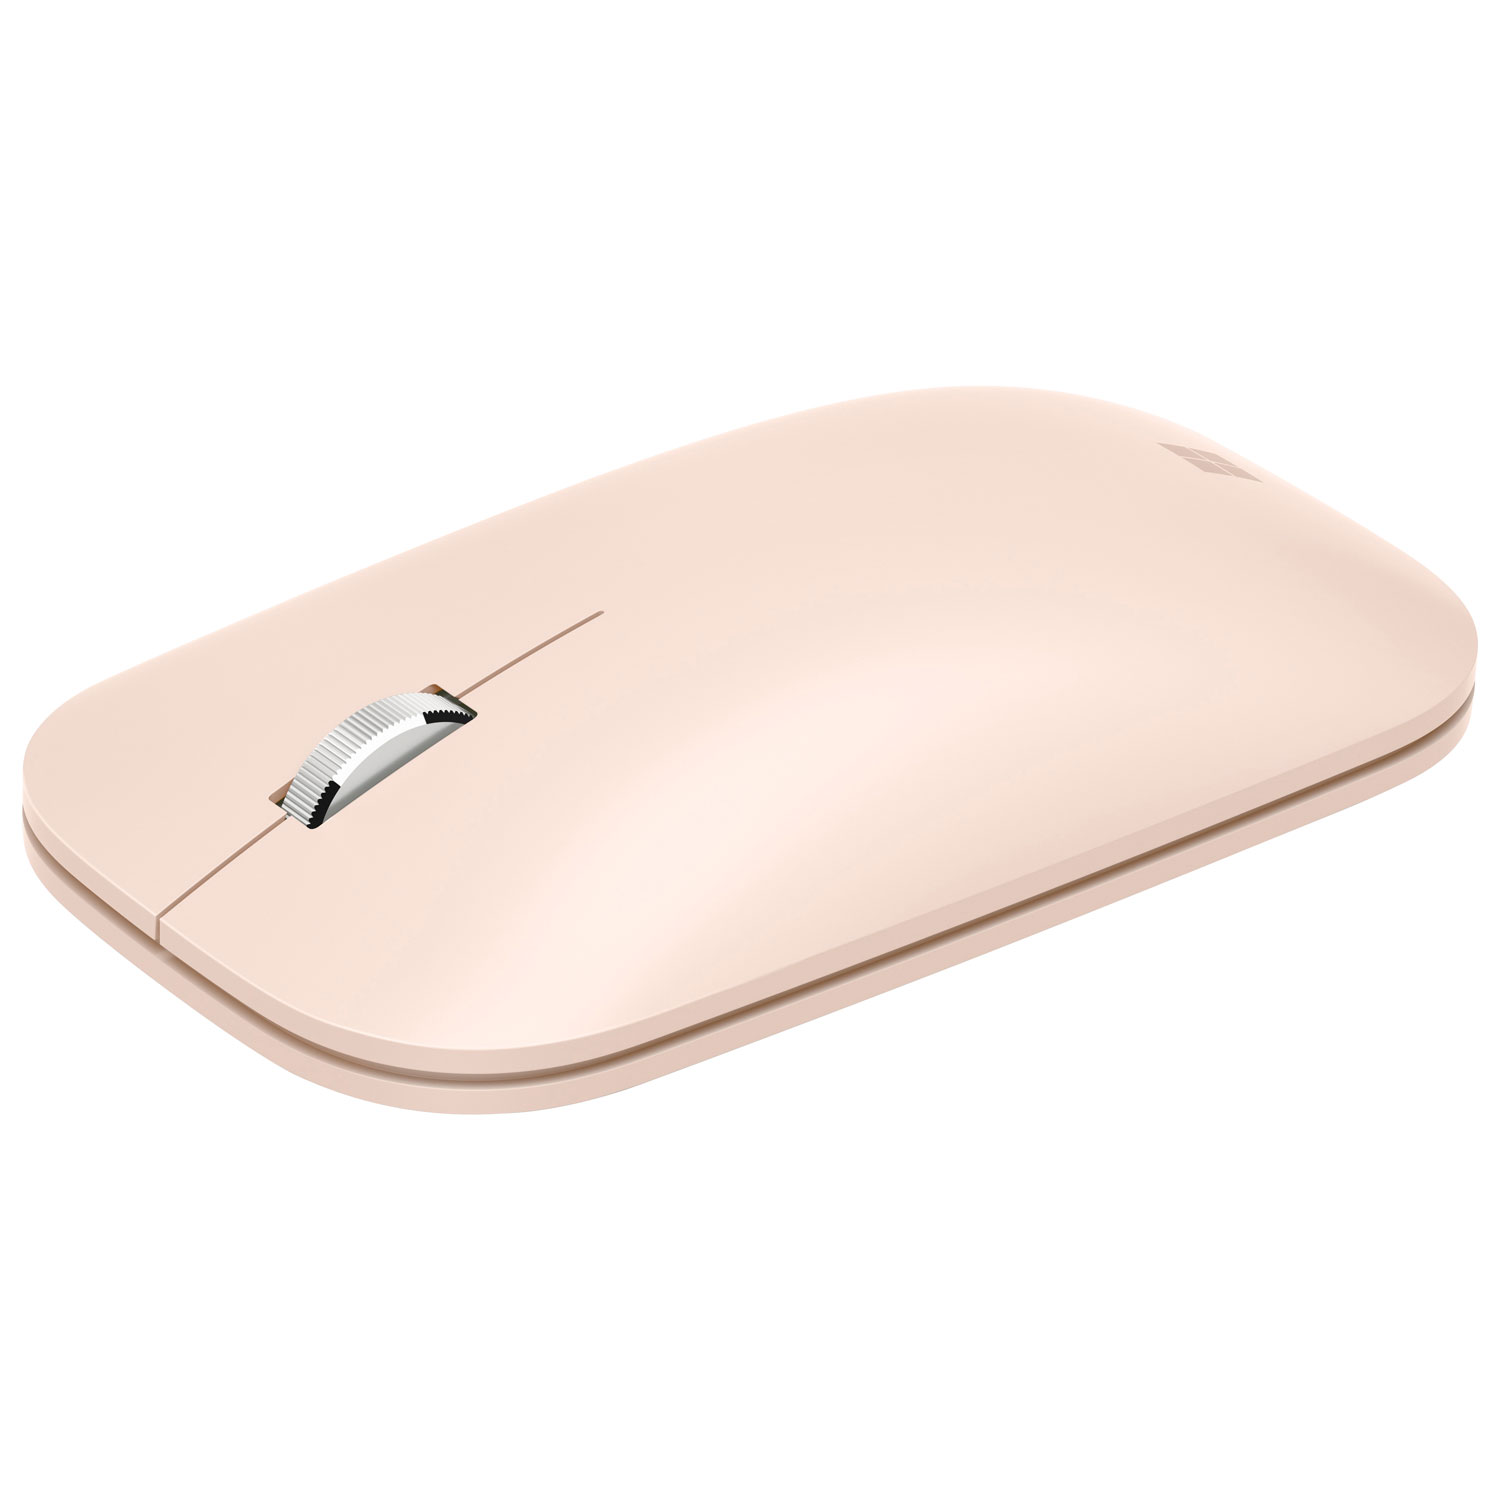 Souris Surface Mobile Mouse de Microsoft - Grès